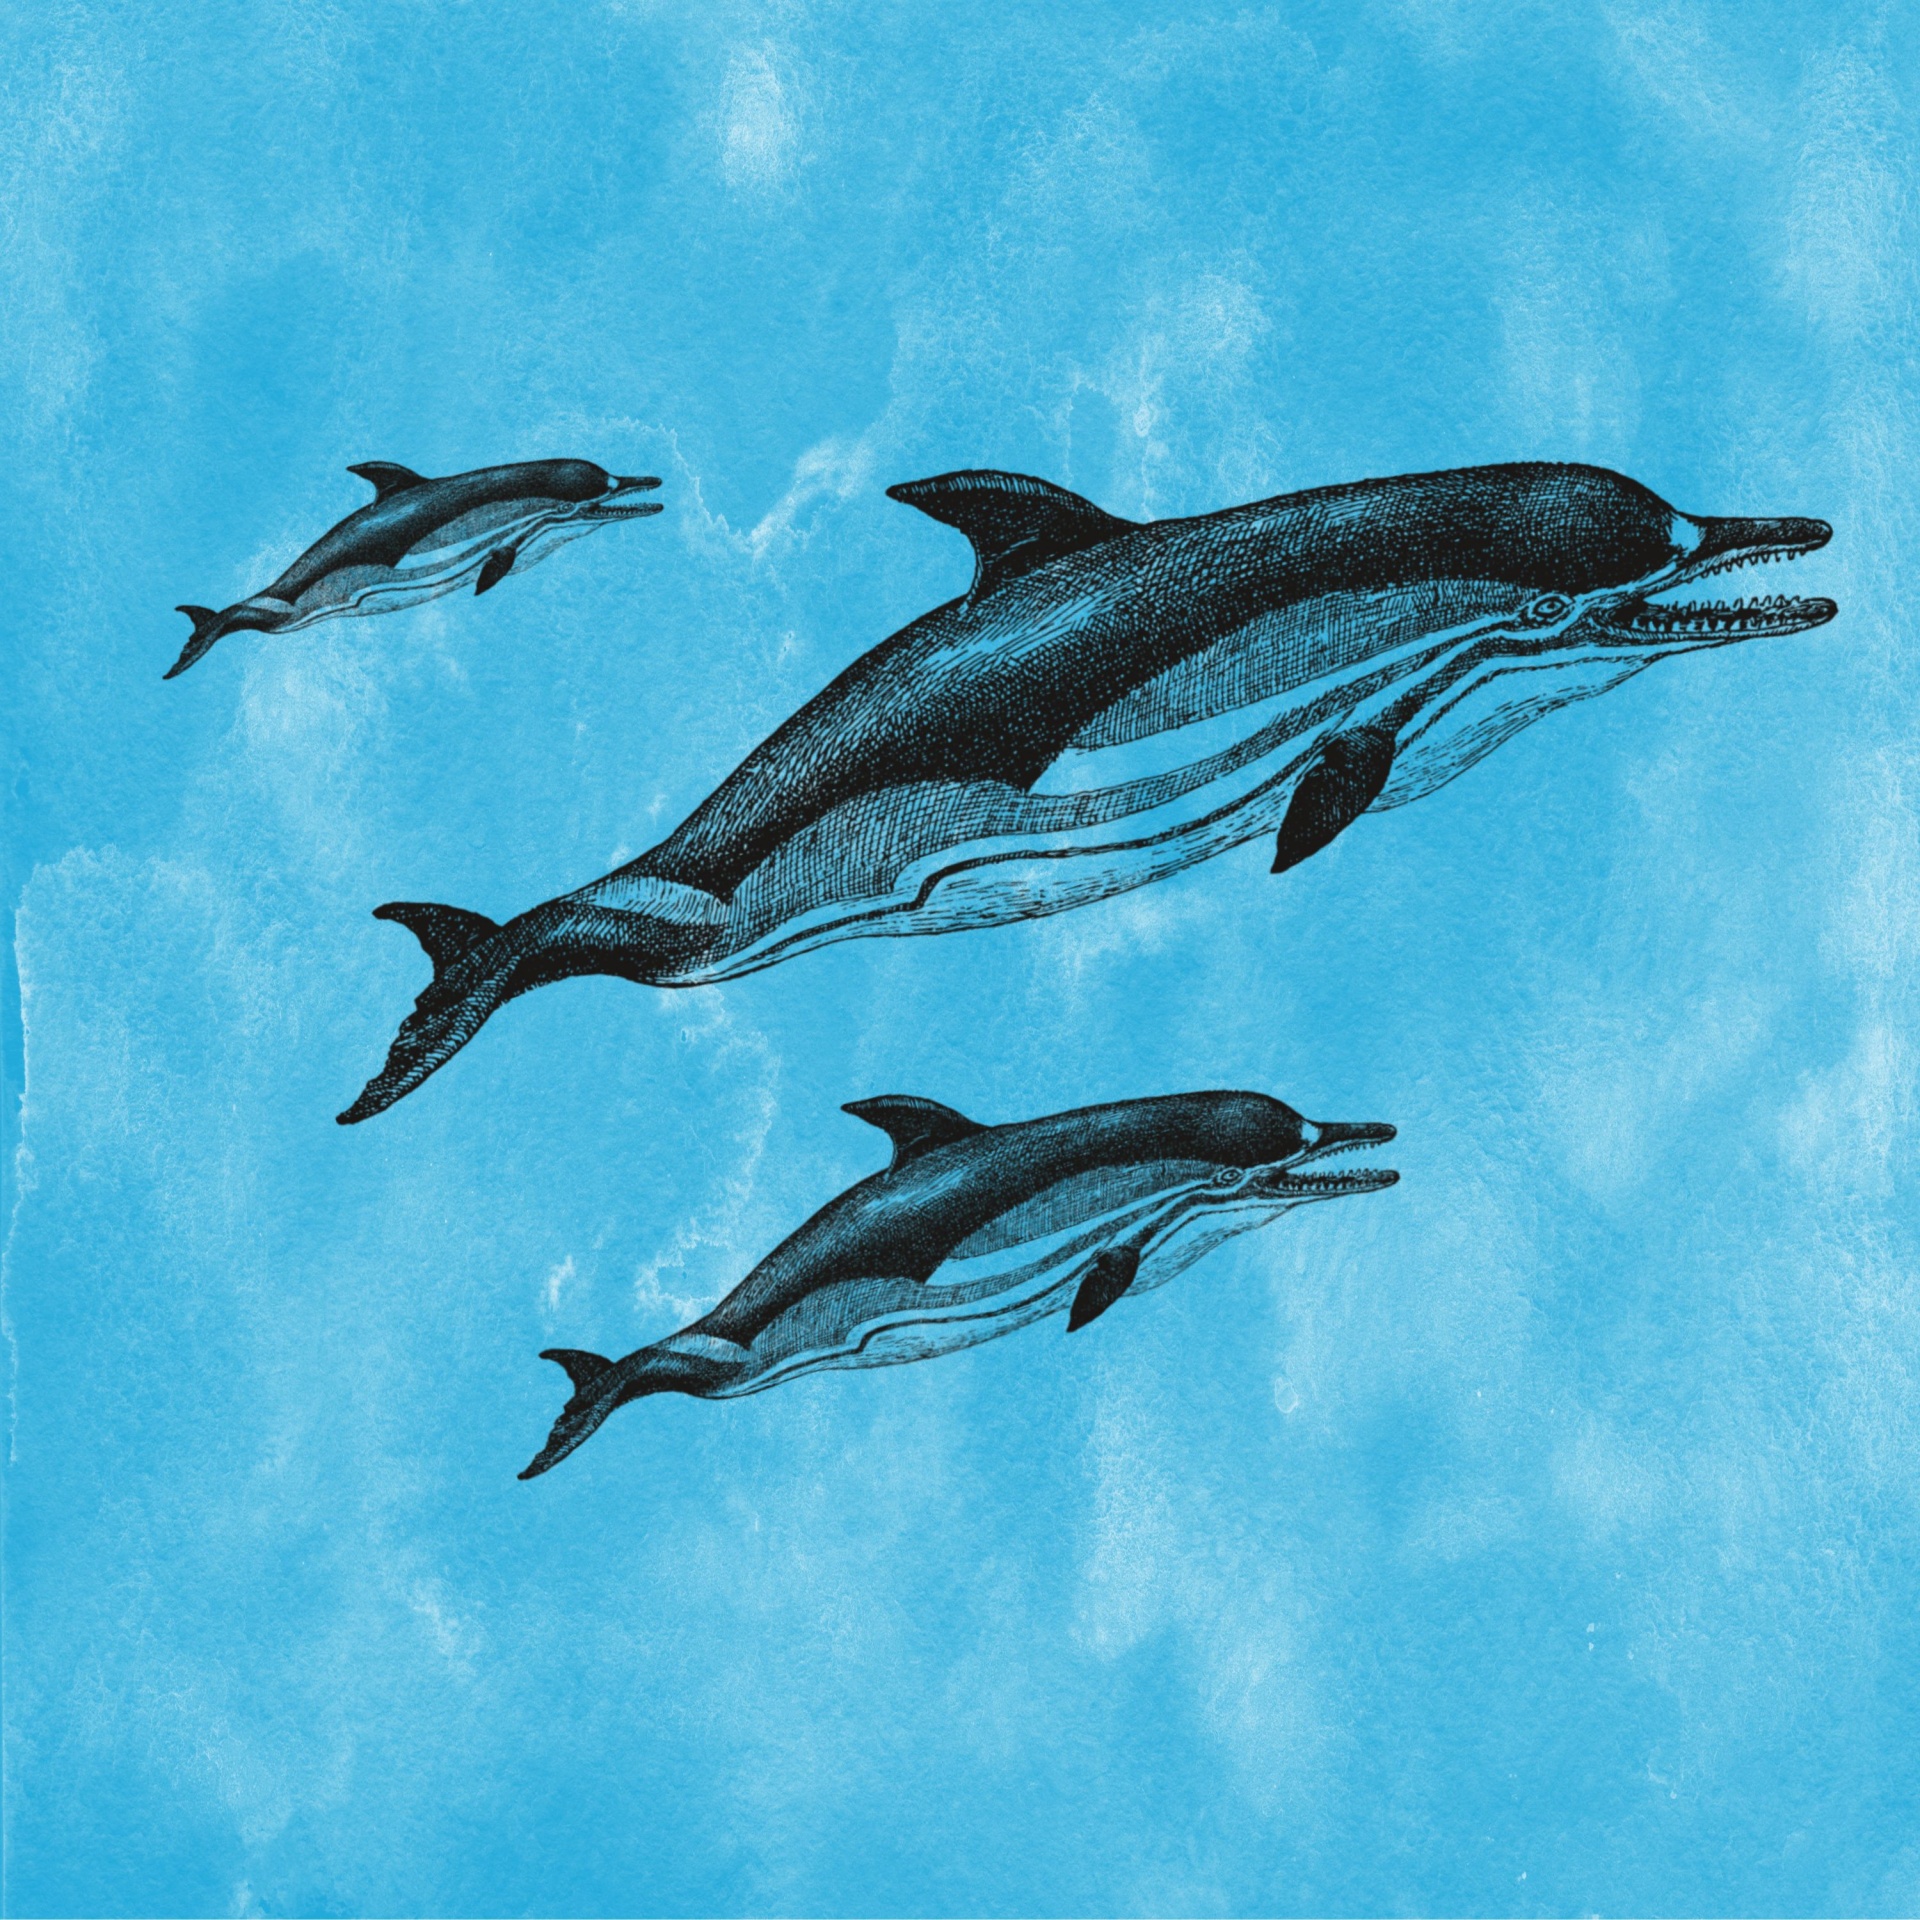 Vintage Dolphins Illustration